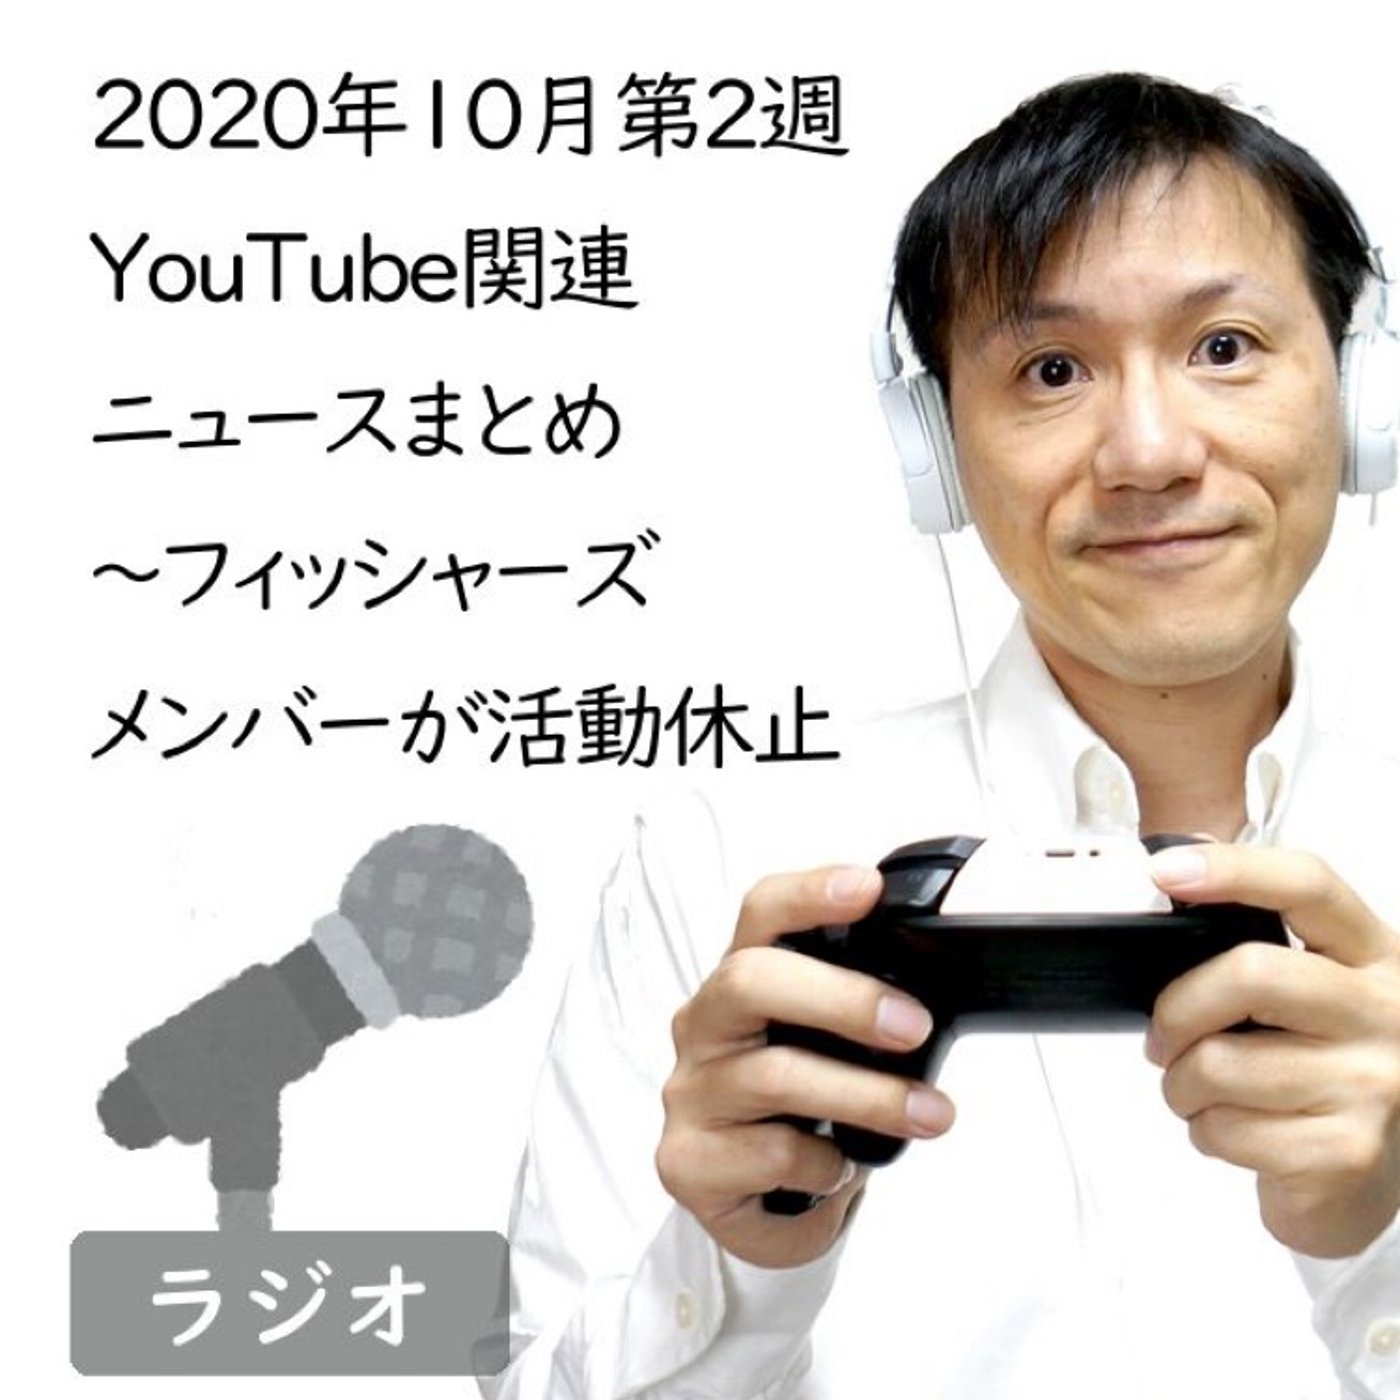 【#221】2020年10月第2週YouTube関連ニュースまとめ～人気ユーチュ